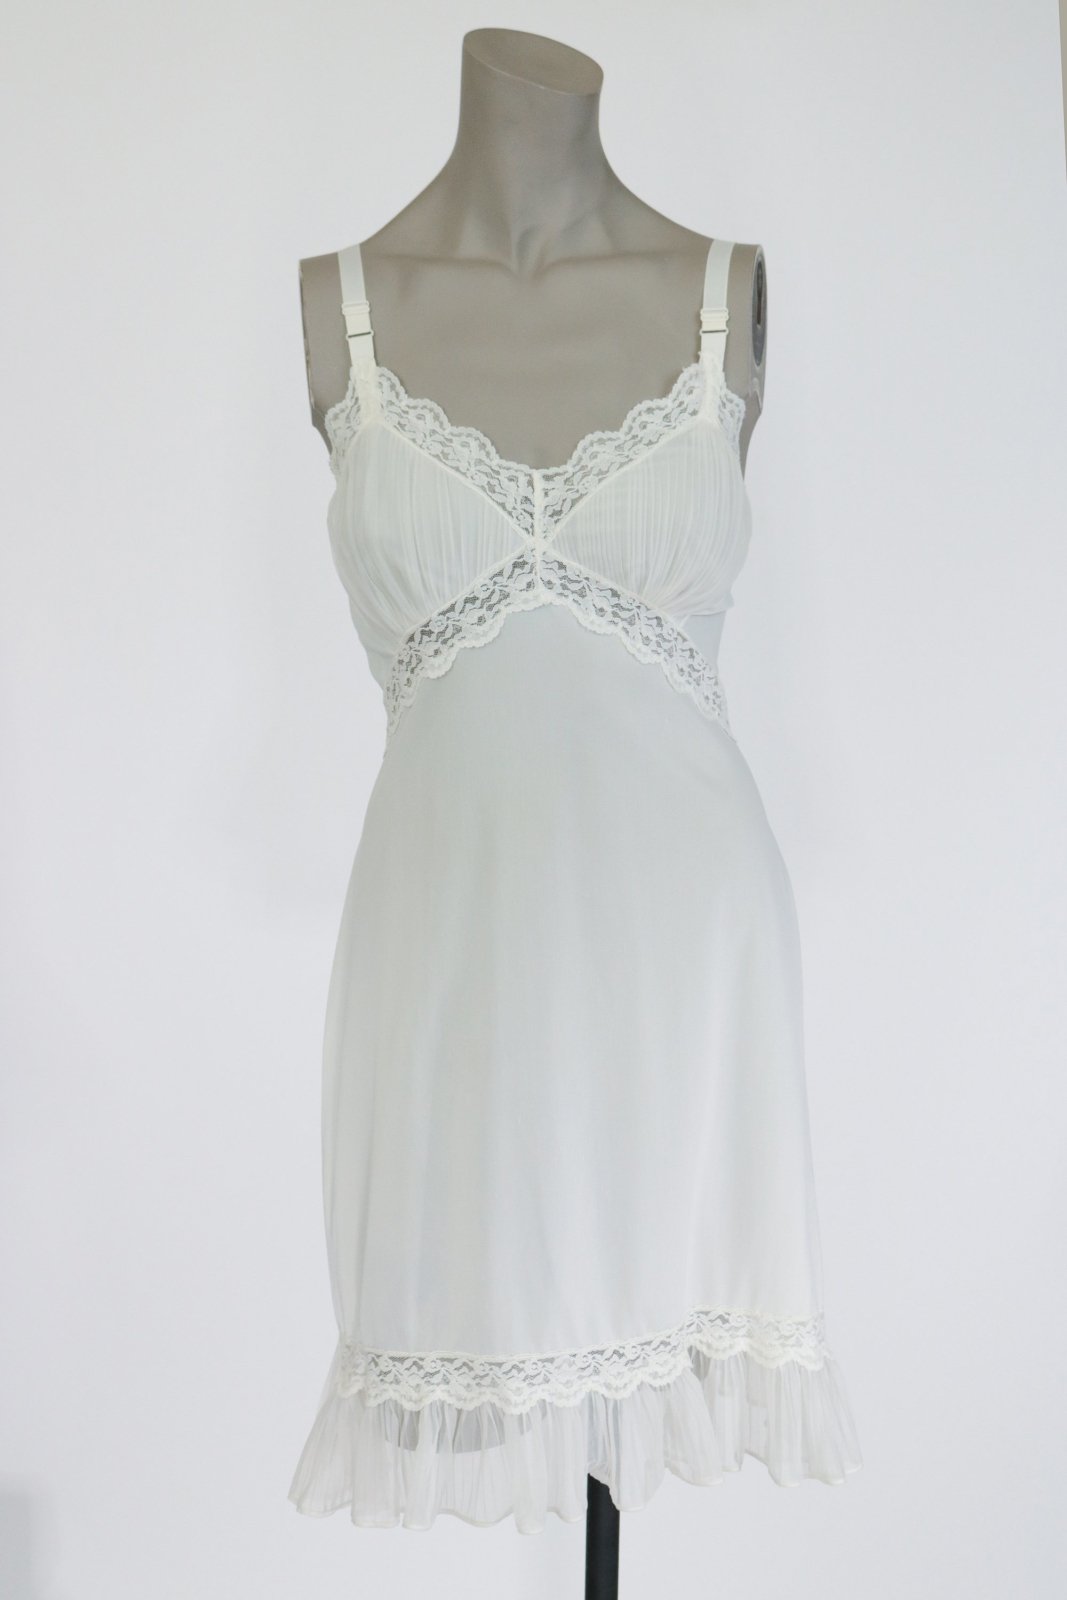 1960s Vintage Nylon White Lace Slip Dress Mini Dress Short Length 